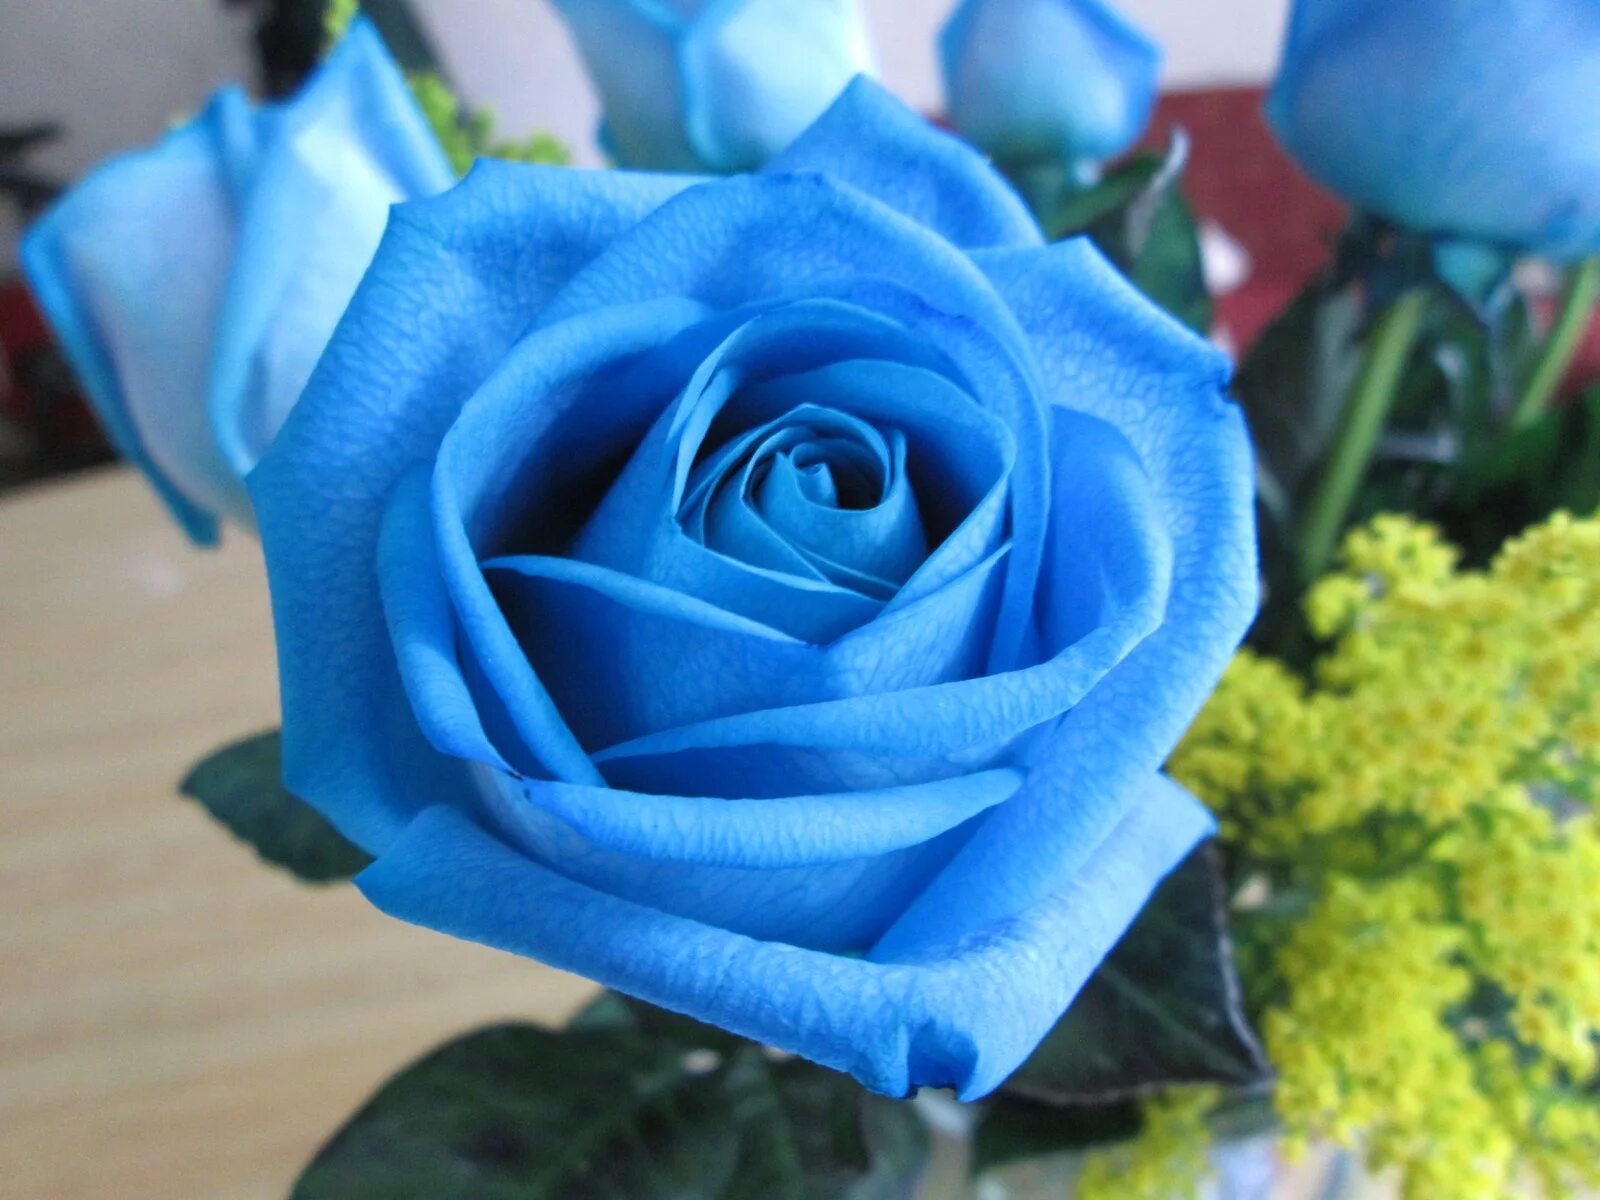 Фотография синего цвета. Роза чайно-гибридная голубая Лагуна. Роза плетистая синяя. Роза плетистая голубая мечта. Роза оушен Блю.